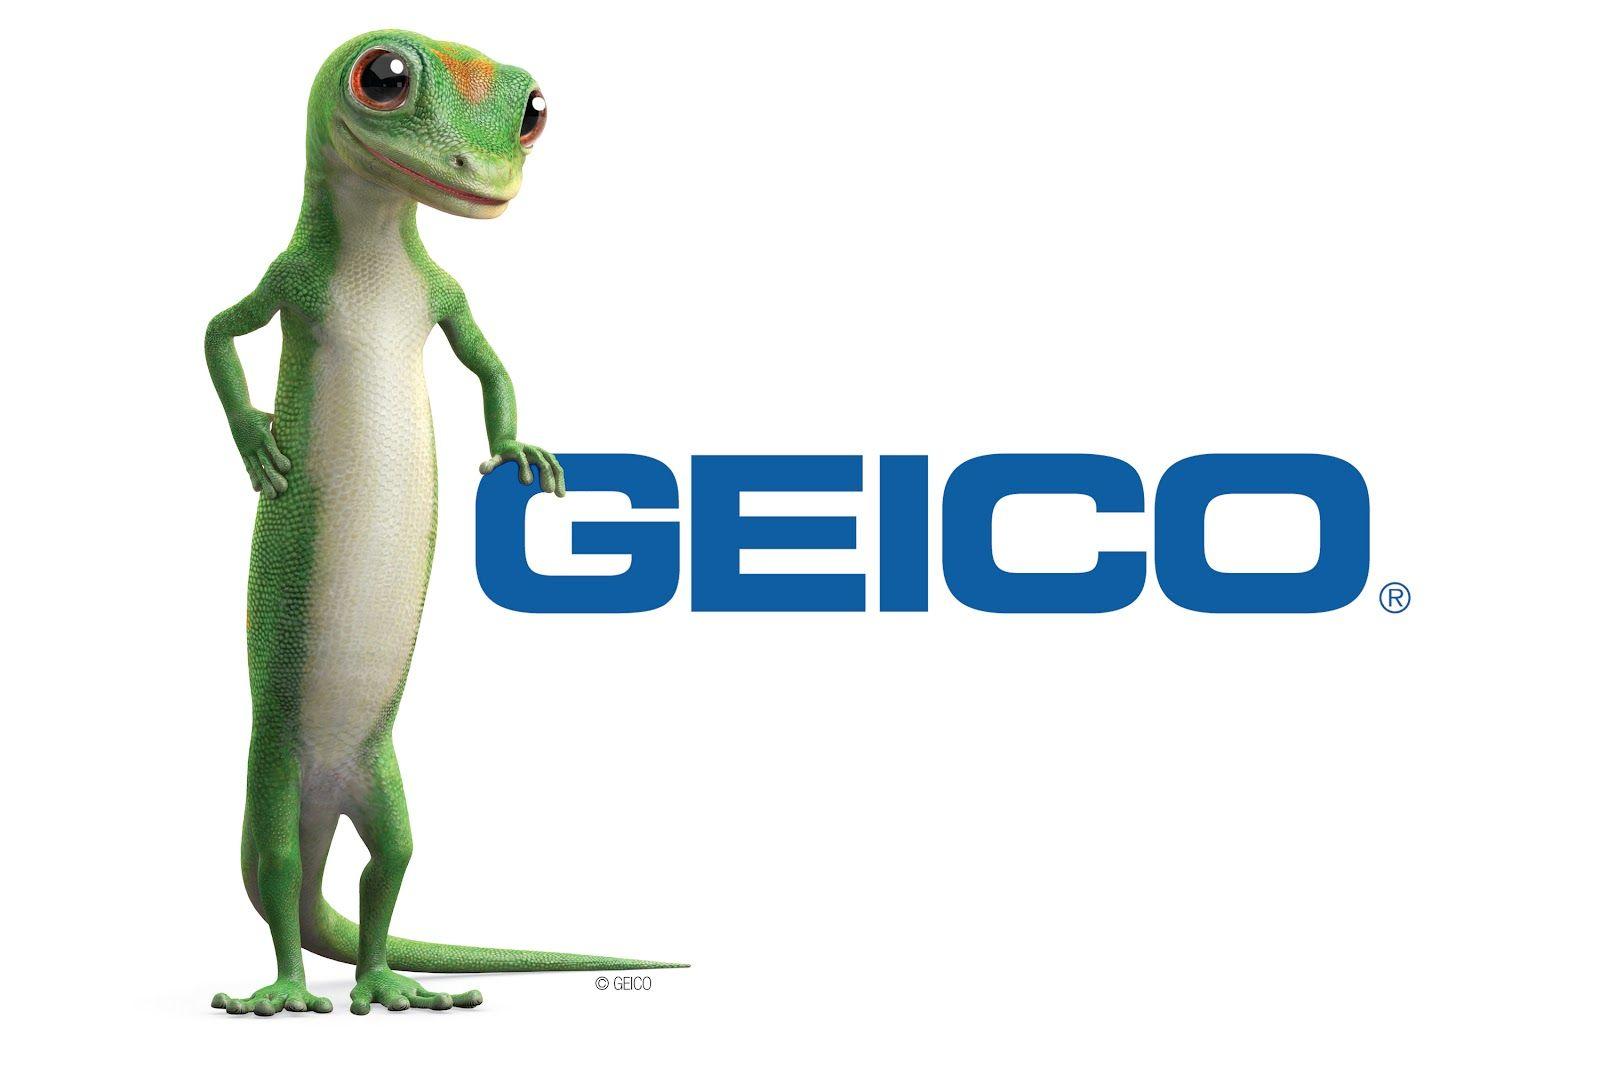 GEICO Logo - Image - Geico geico.jpg | Logopedia | FANDOM powered by Wikia